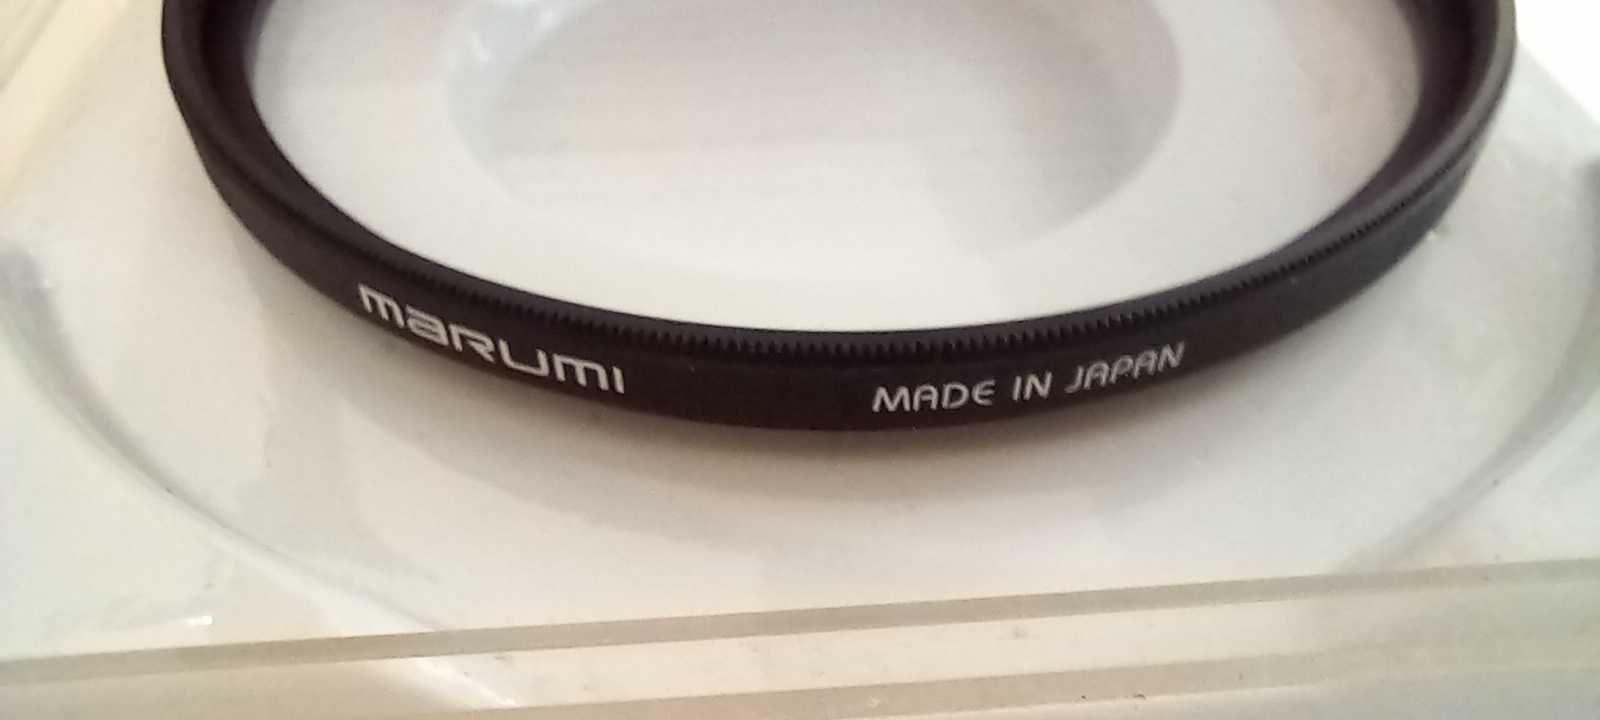 Filtro Marumi DHG Lens Protect 72mm Excelente estado